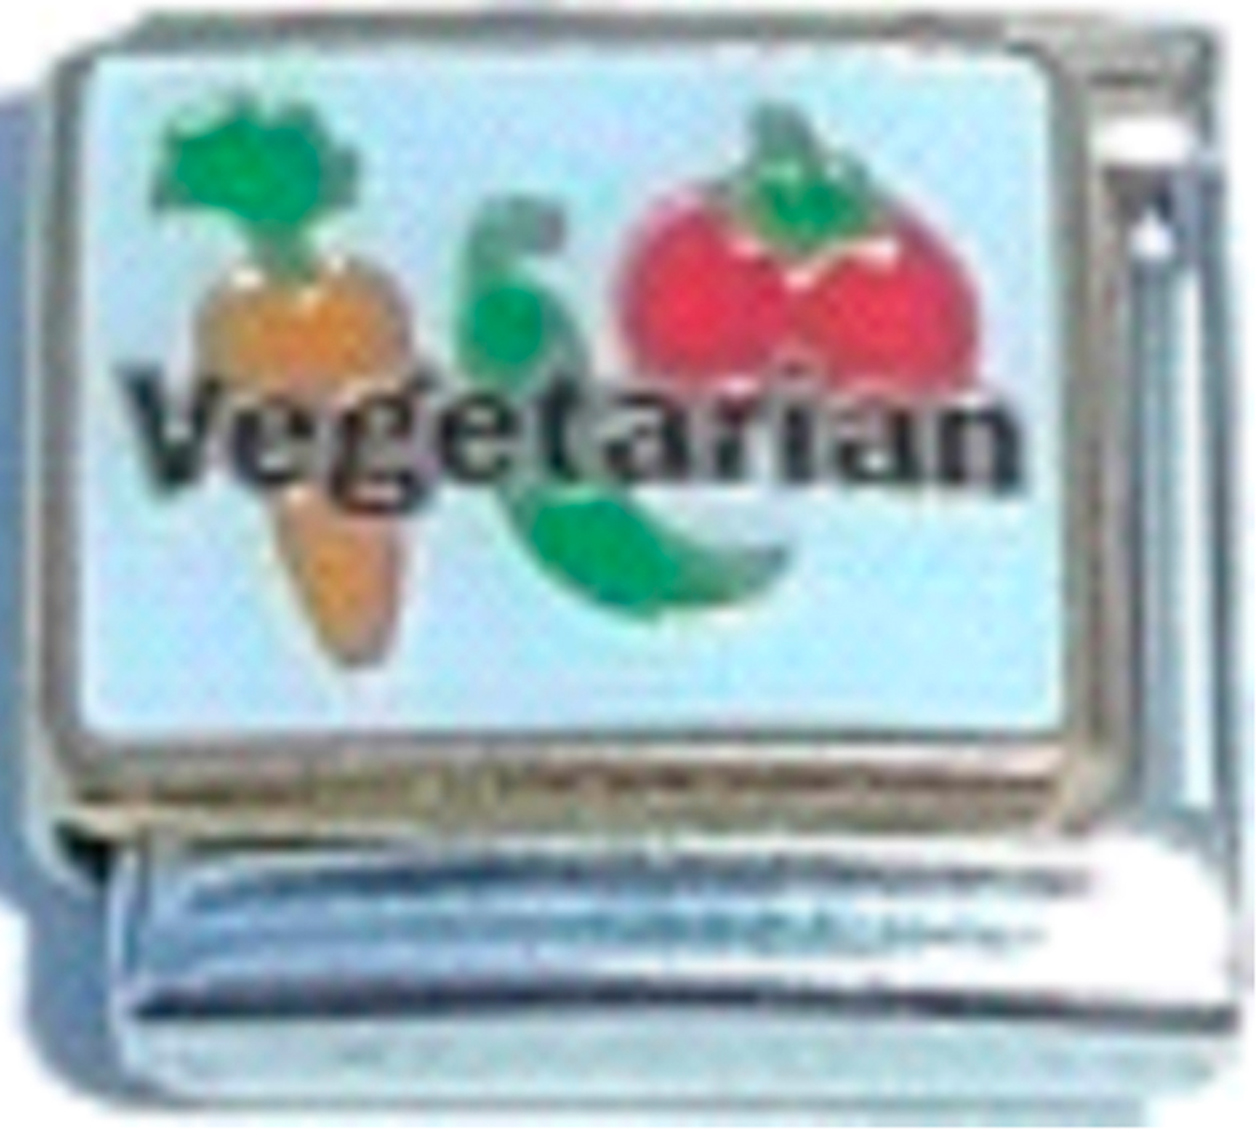 FO039-Vegetarian